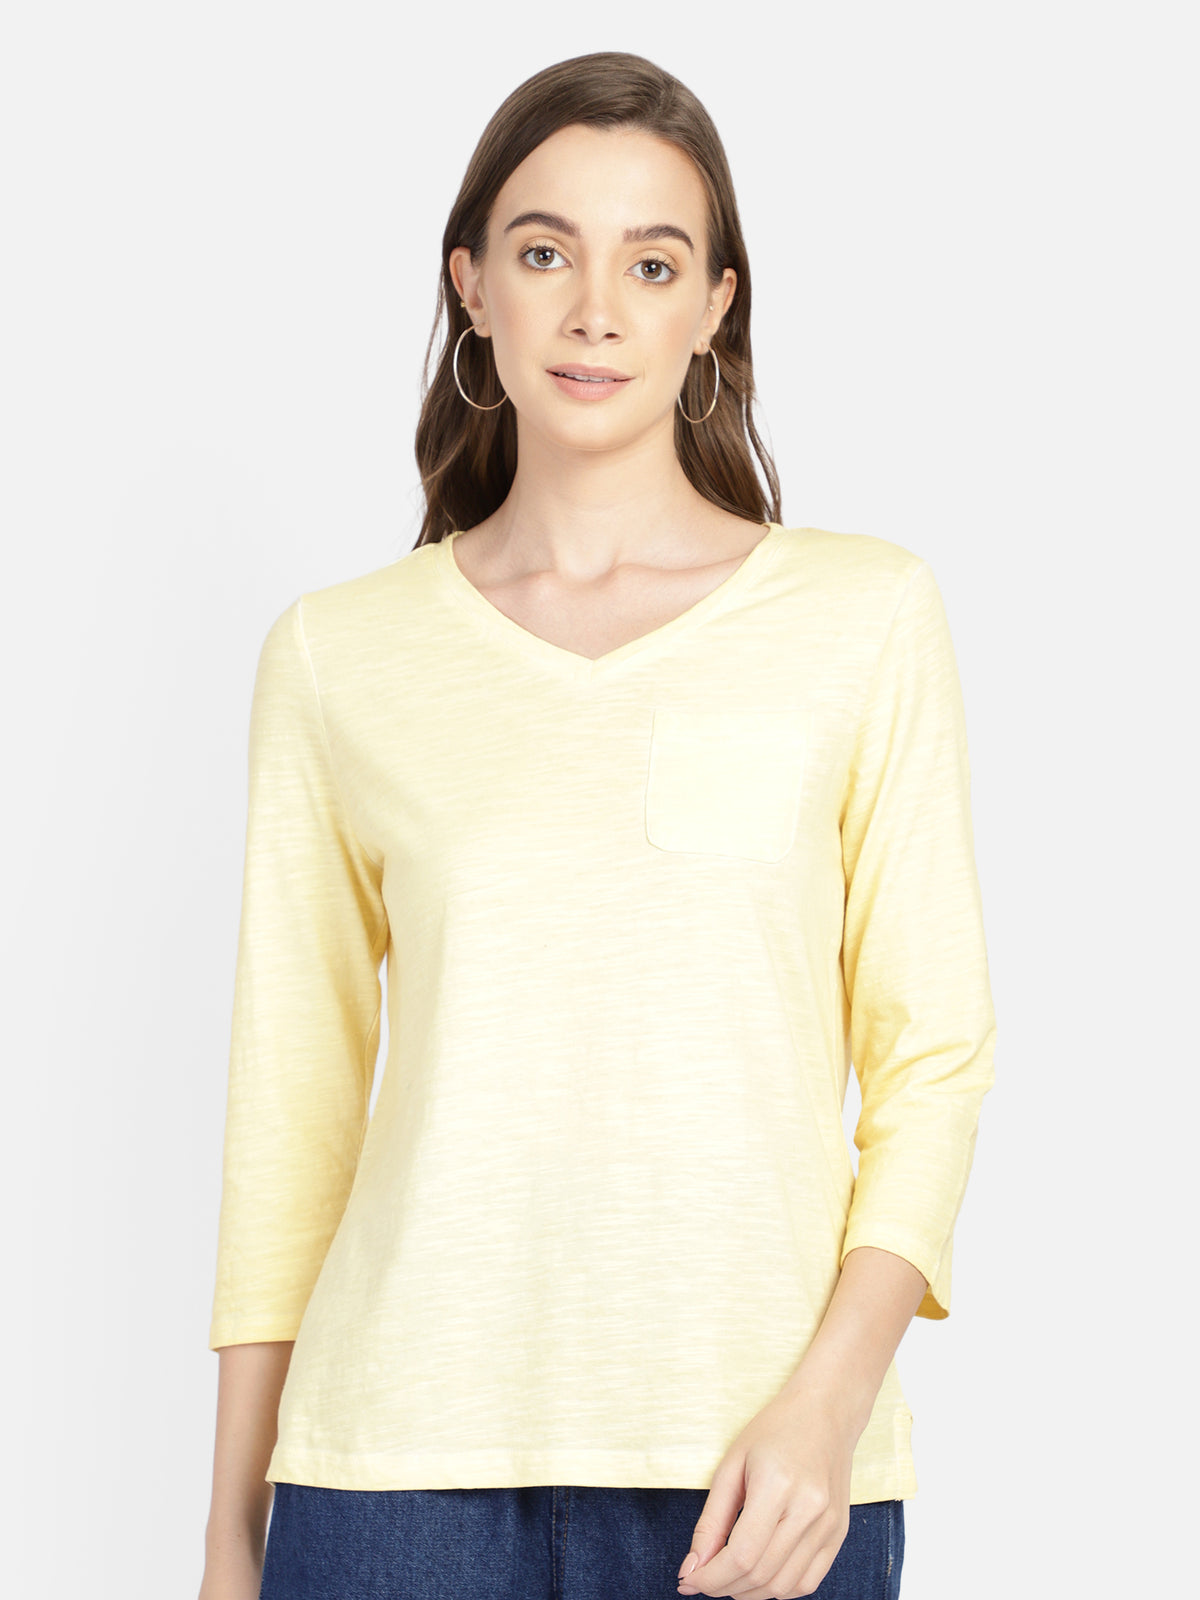 Yellow cotton t-shirt - Aditi Wasan